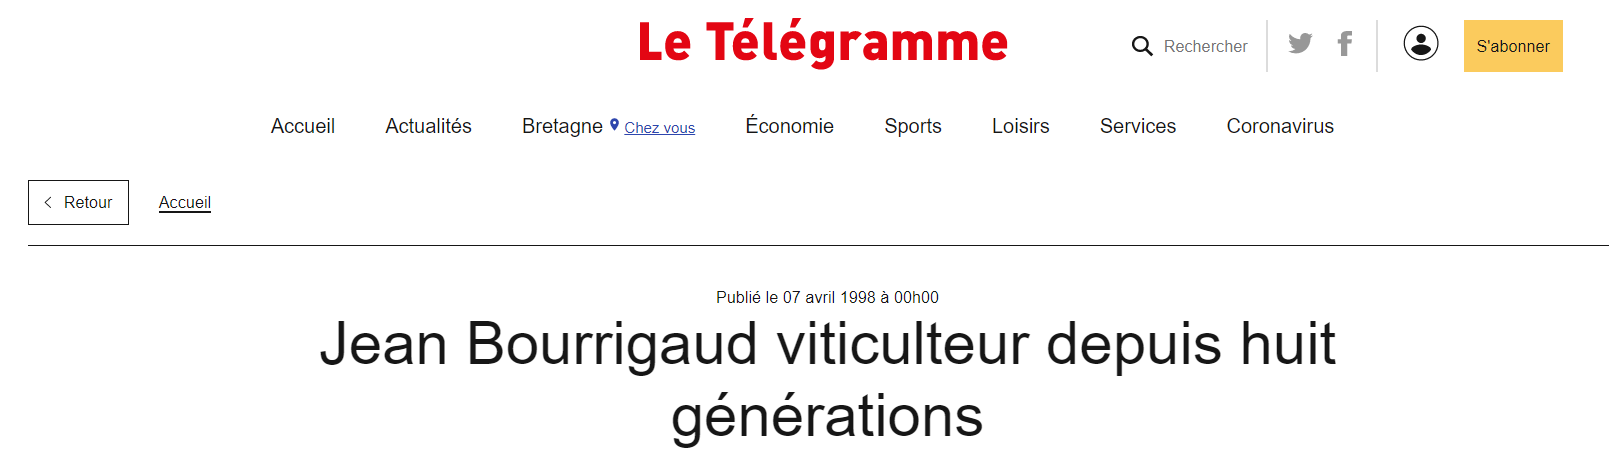 Le passé nous revient en mémoire grâce aux médias : Le Télégramme 1998 !